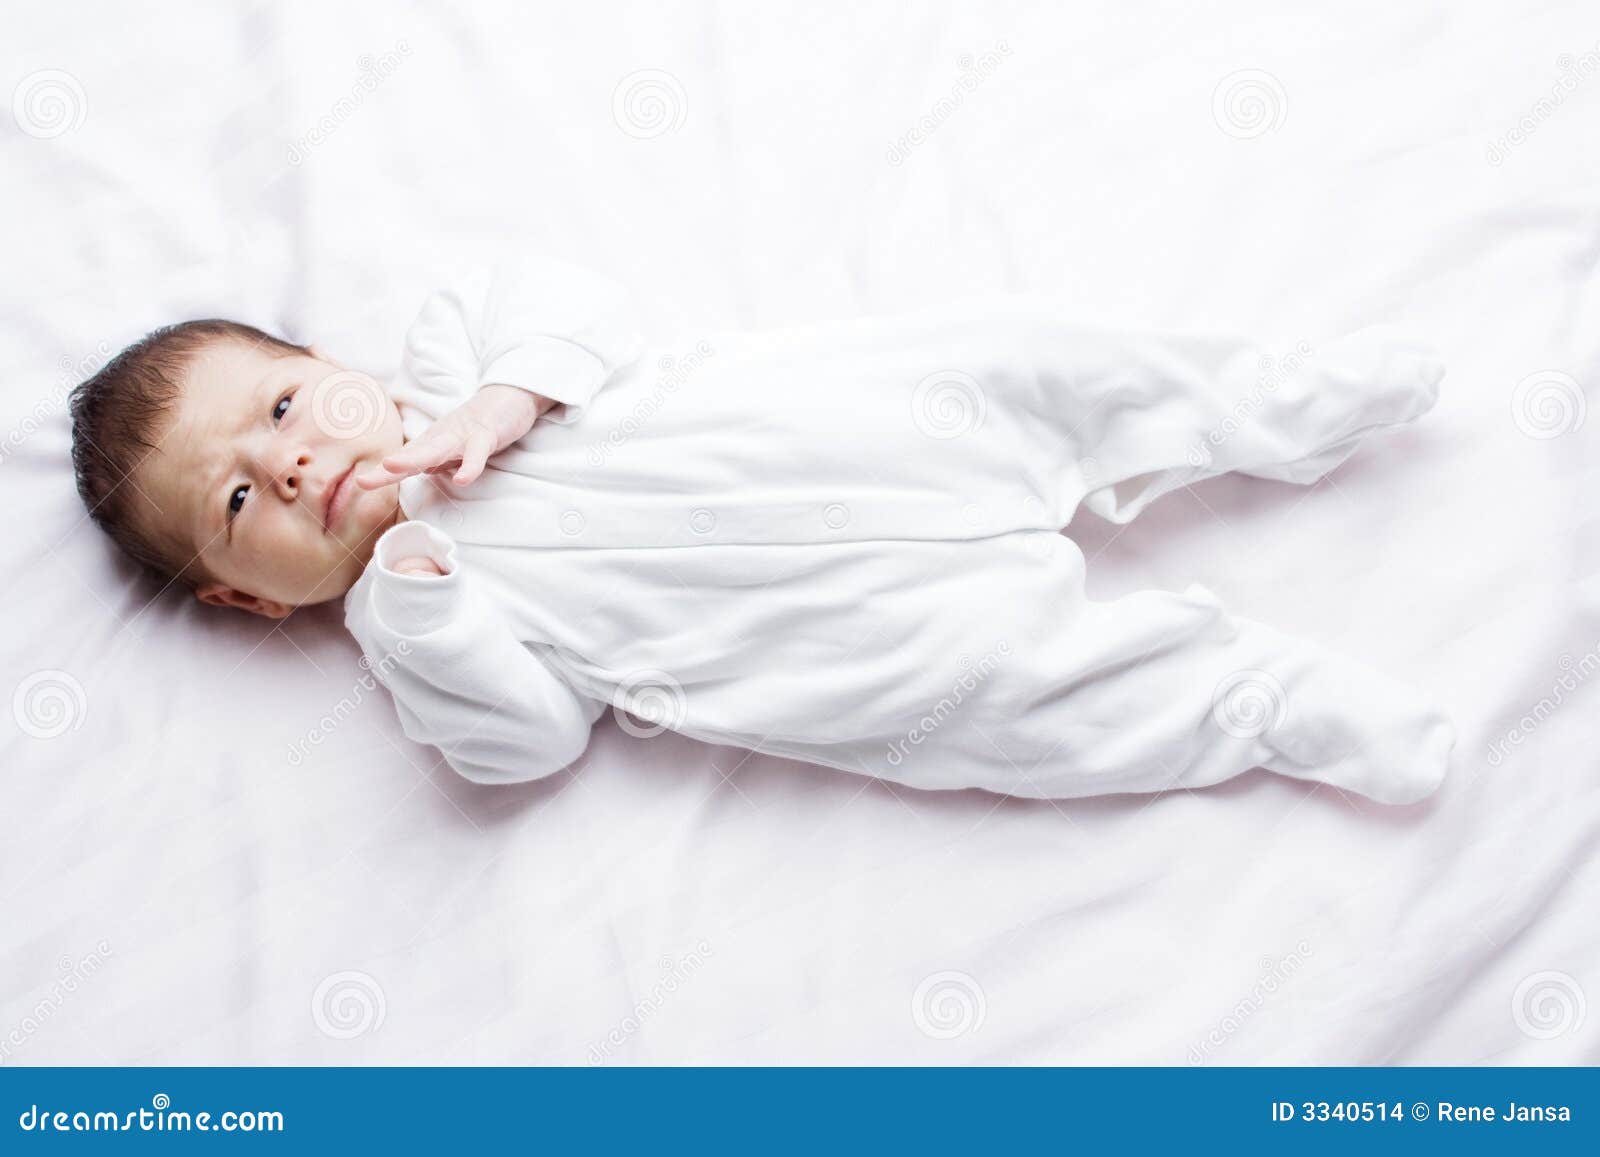 white infant sleeper